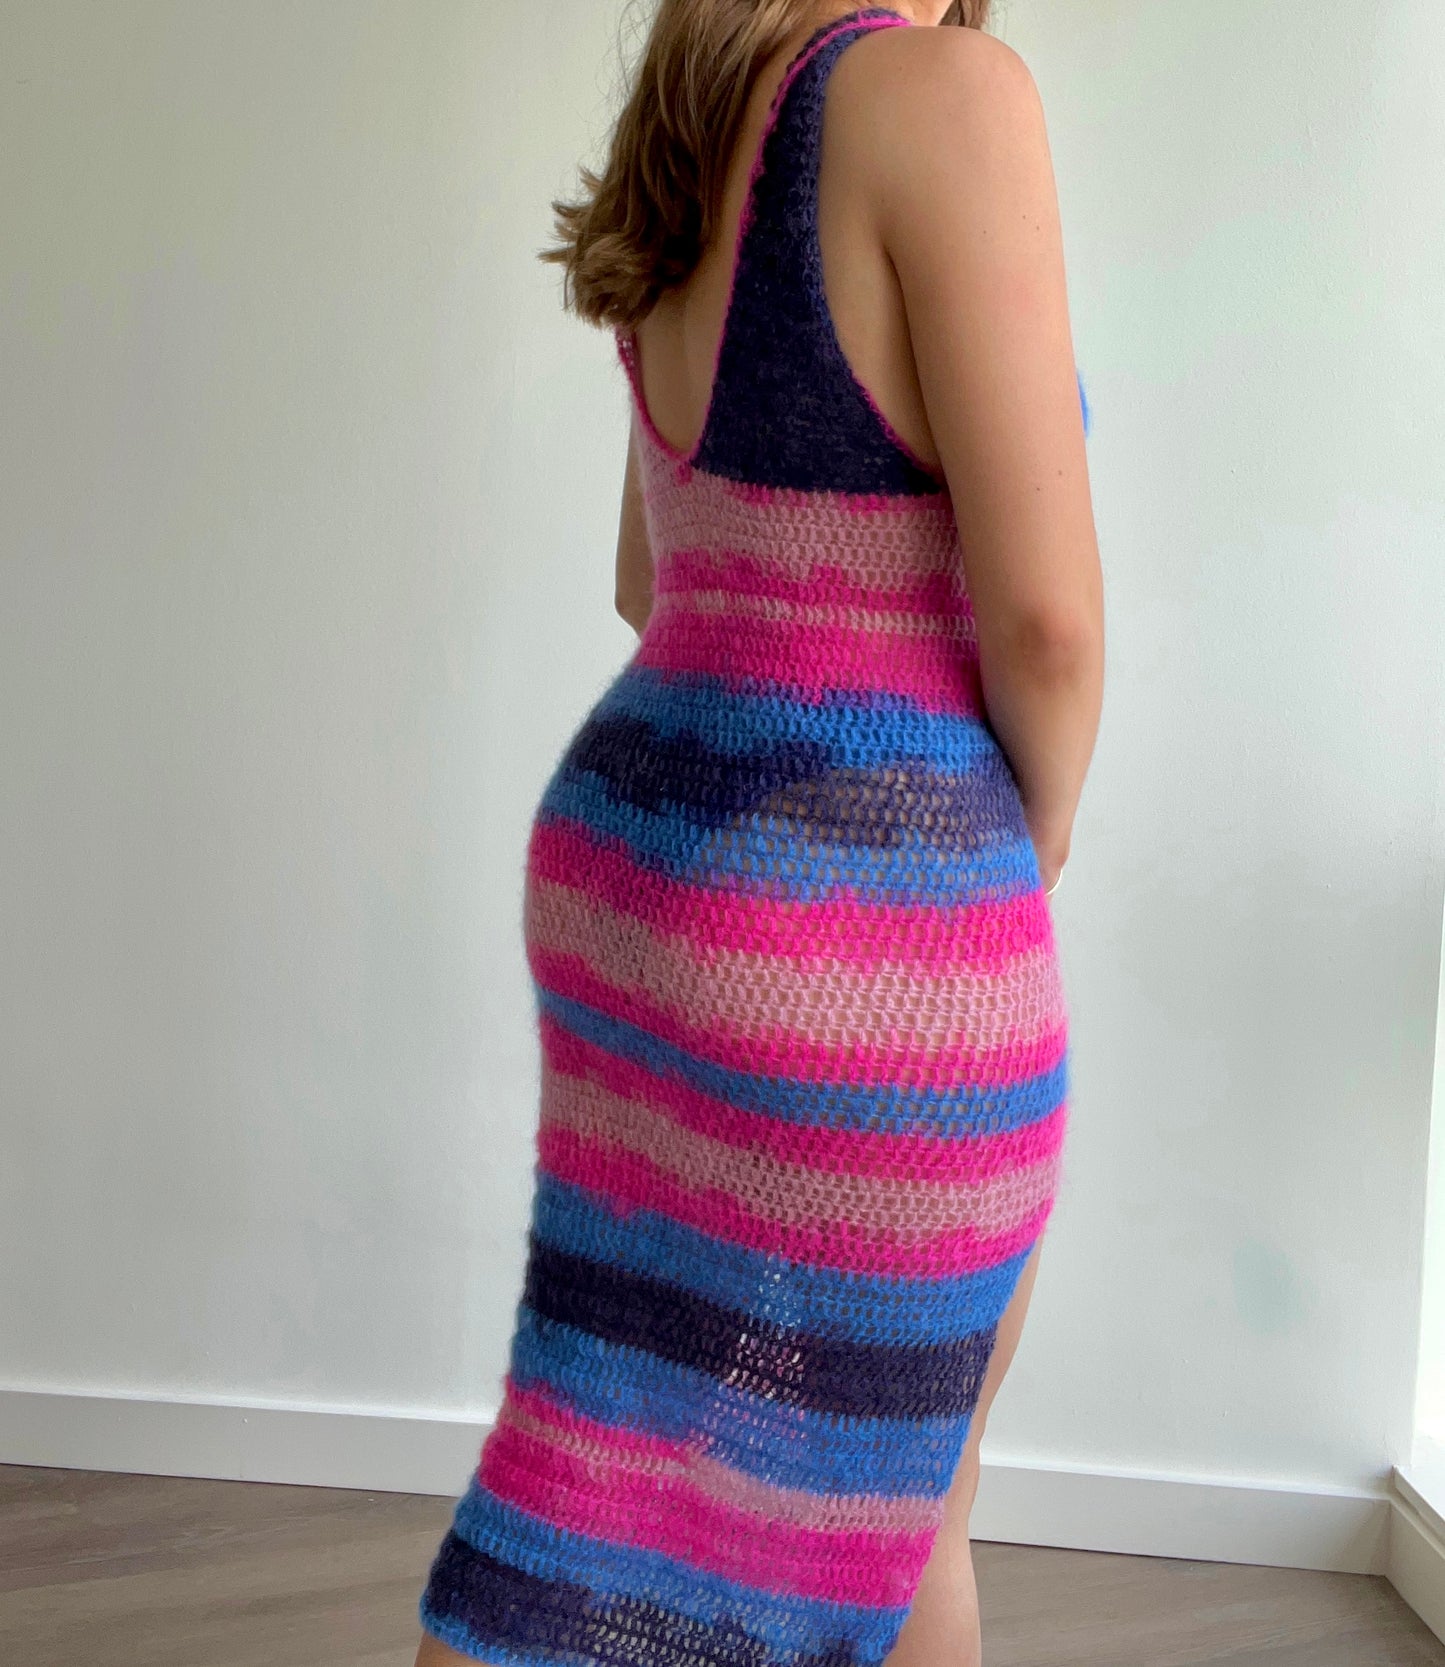 Rio Dress Crochet Pattern